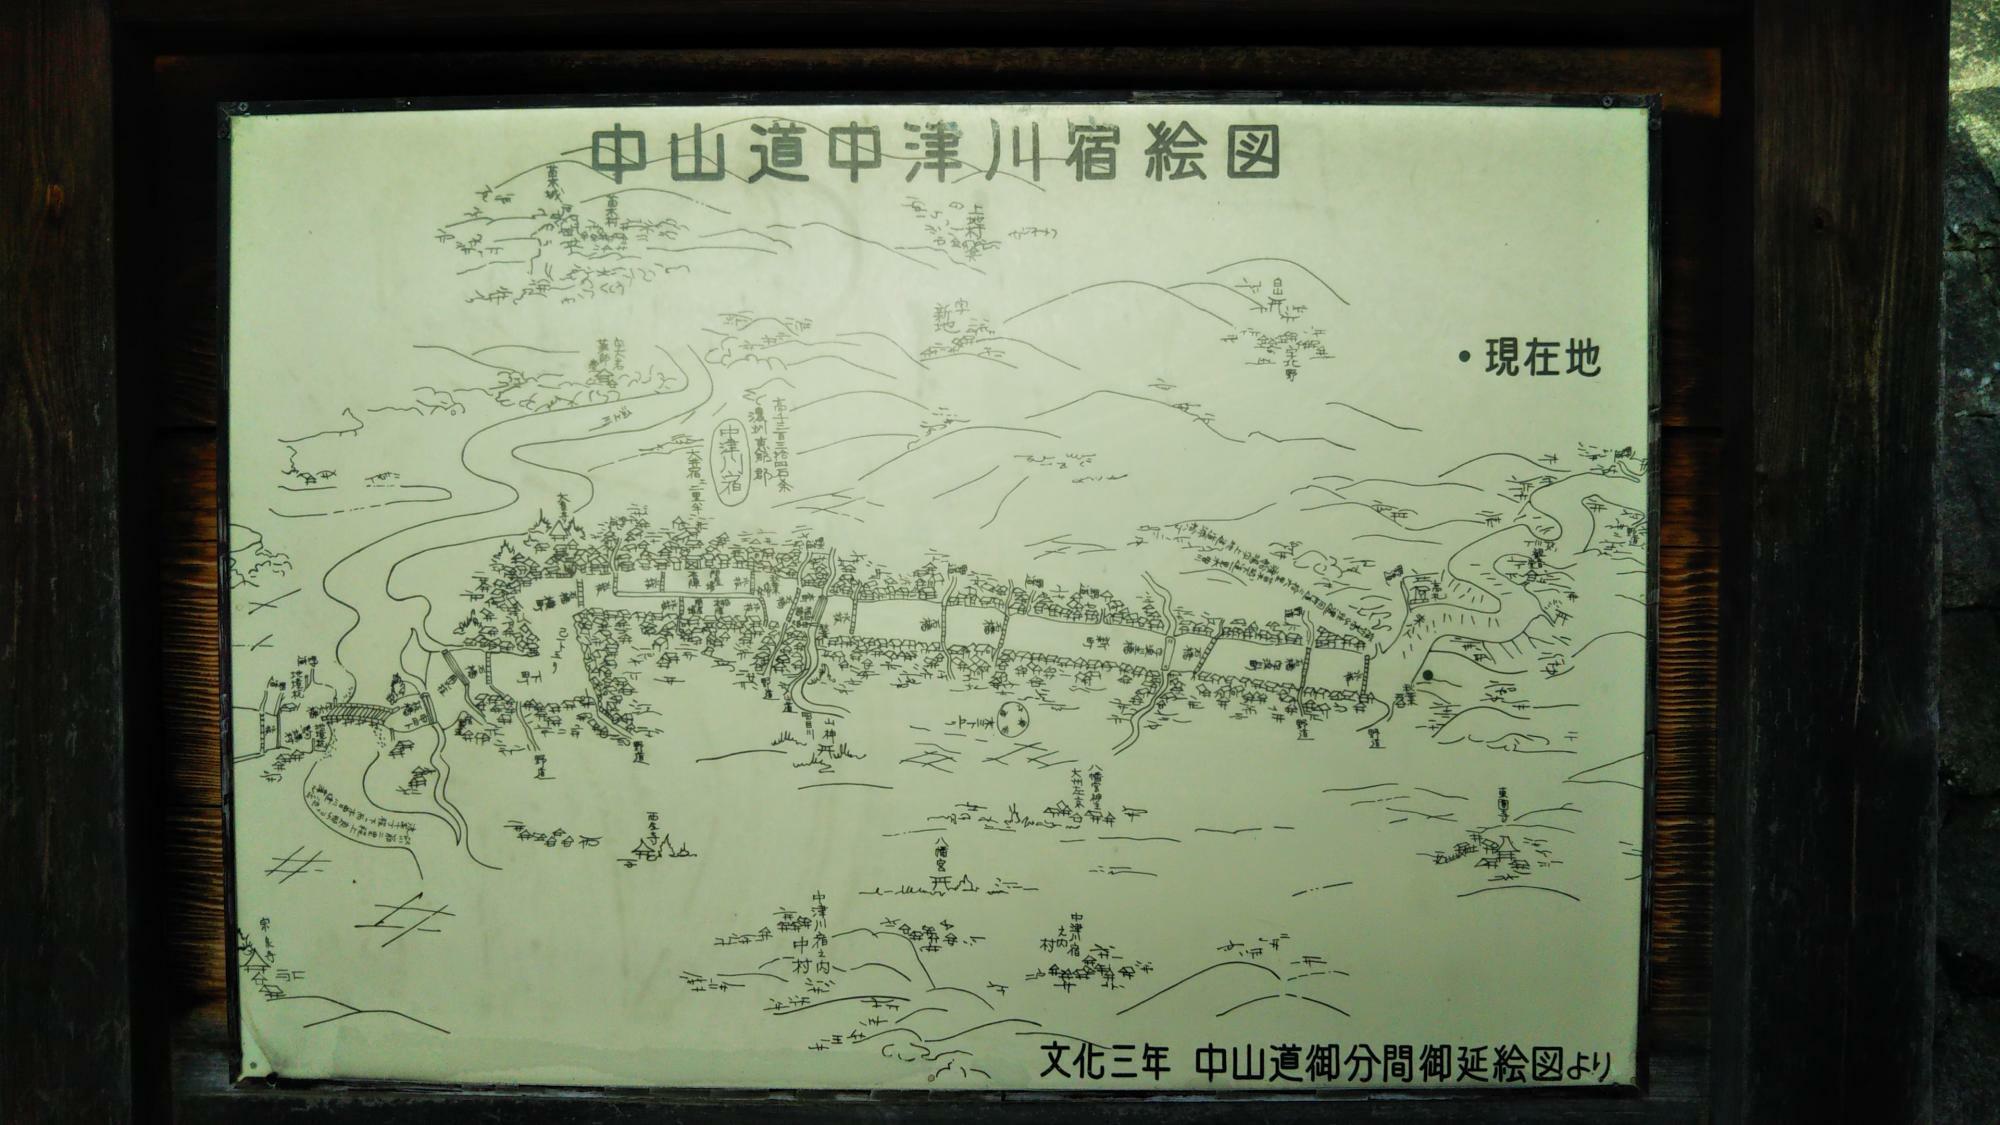 中津川宿絵図。現在地が空白地帯で距離感覚がわかりません。昔の地図って面白いですね